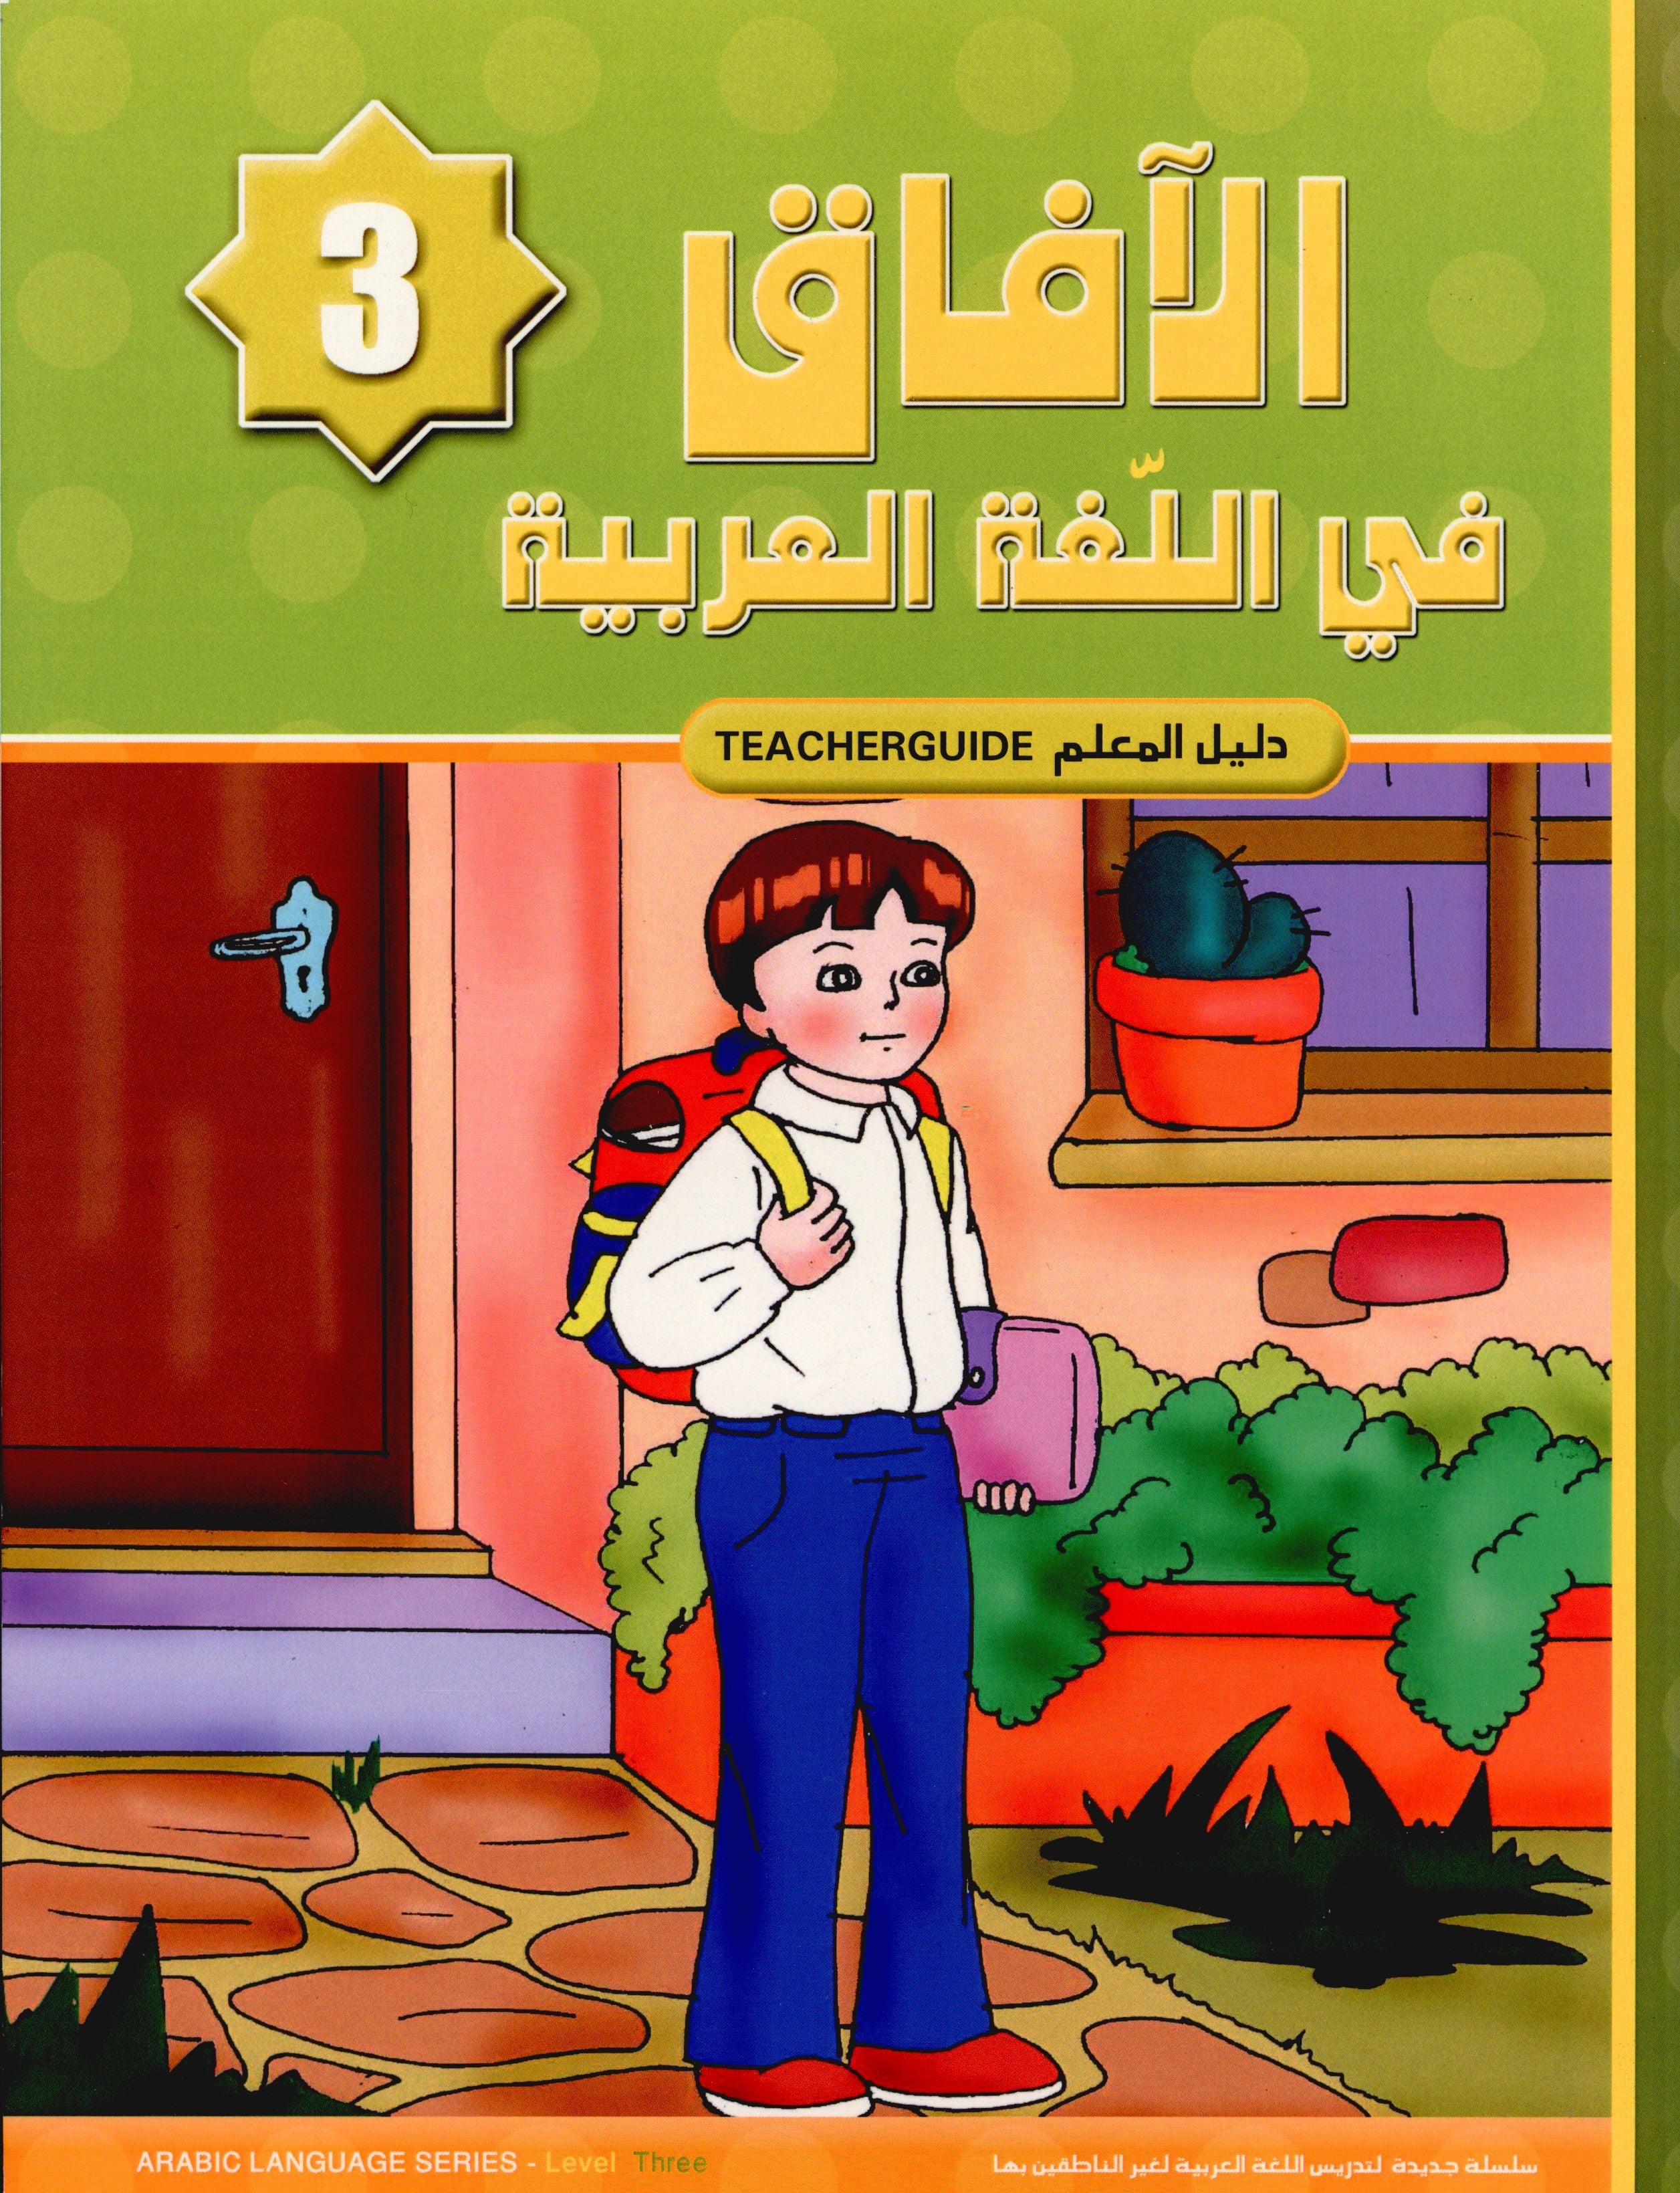 al-aafaq-parent-teacher-guide-grade-level-3-https-www